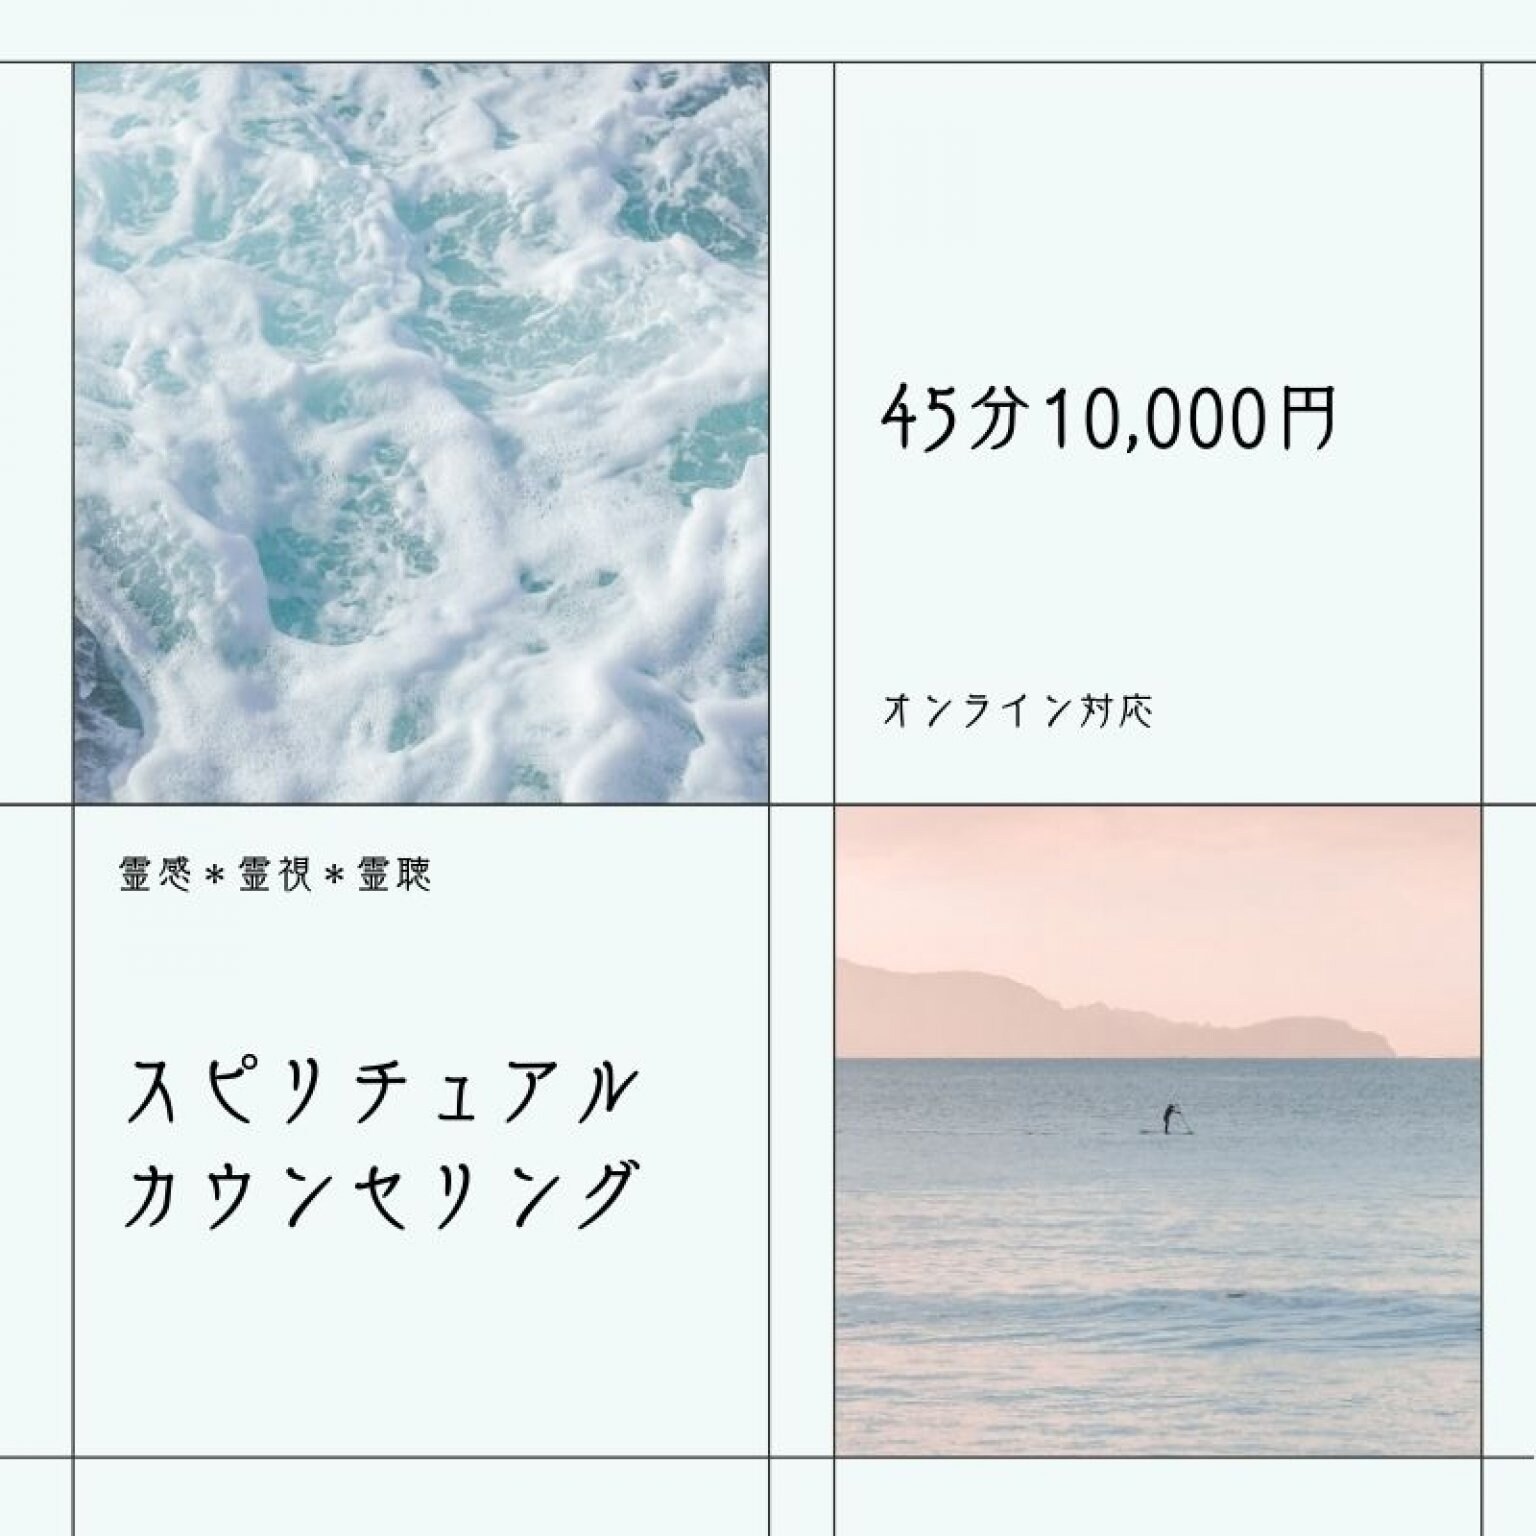 【オンライン対応】スピリチュアルカウンセリング45分10,000円